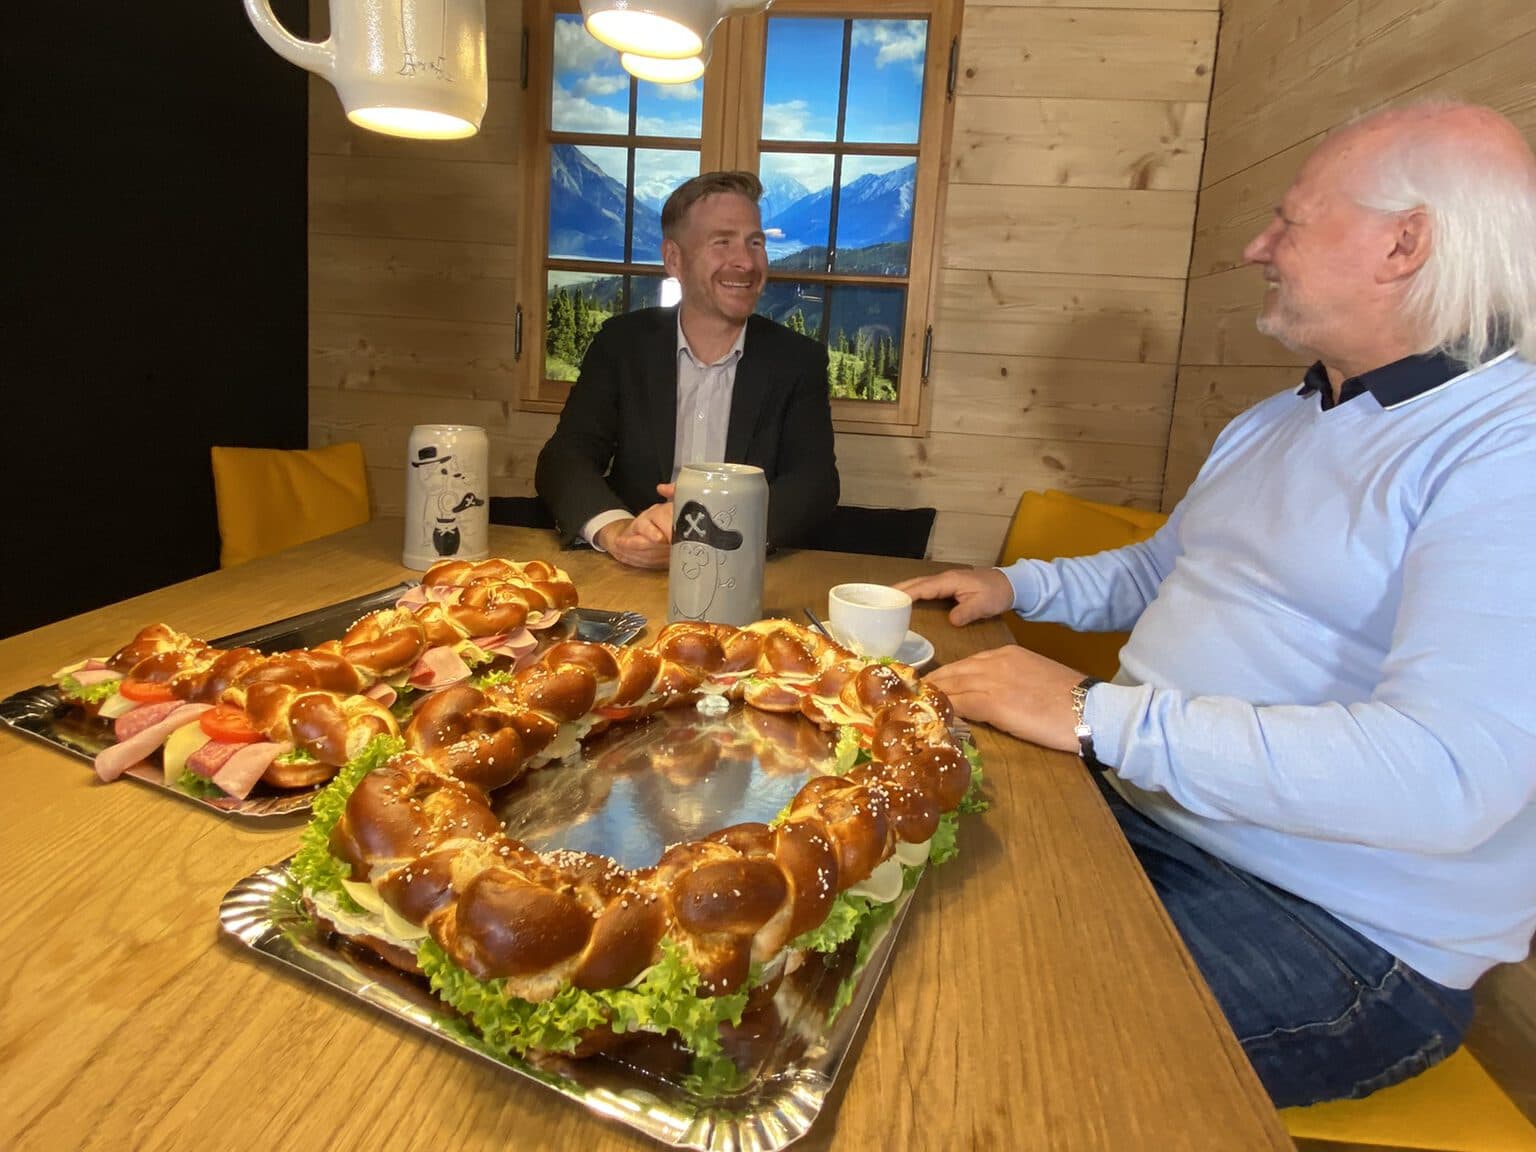 Interview zwischen Bernd Wandt, CEO von ServiceFactum und Mike Deiß, CEO von eggs unimedia. Beide schauen sich lachend an. Vor ihnen liegt eine Brezel in Form einer 10 als Sinnbild für die 10 erfolgreichen Jahre der gemeinsamen Partnerschaft.